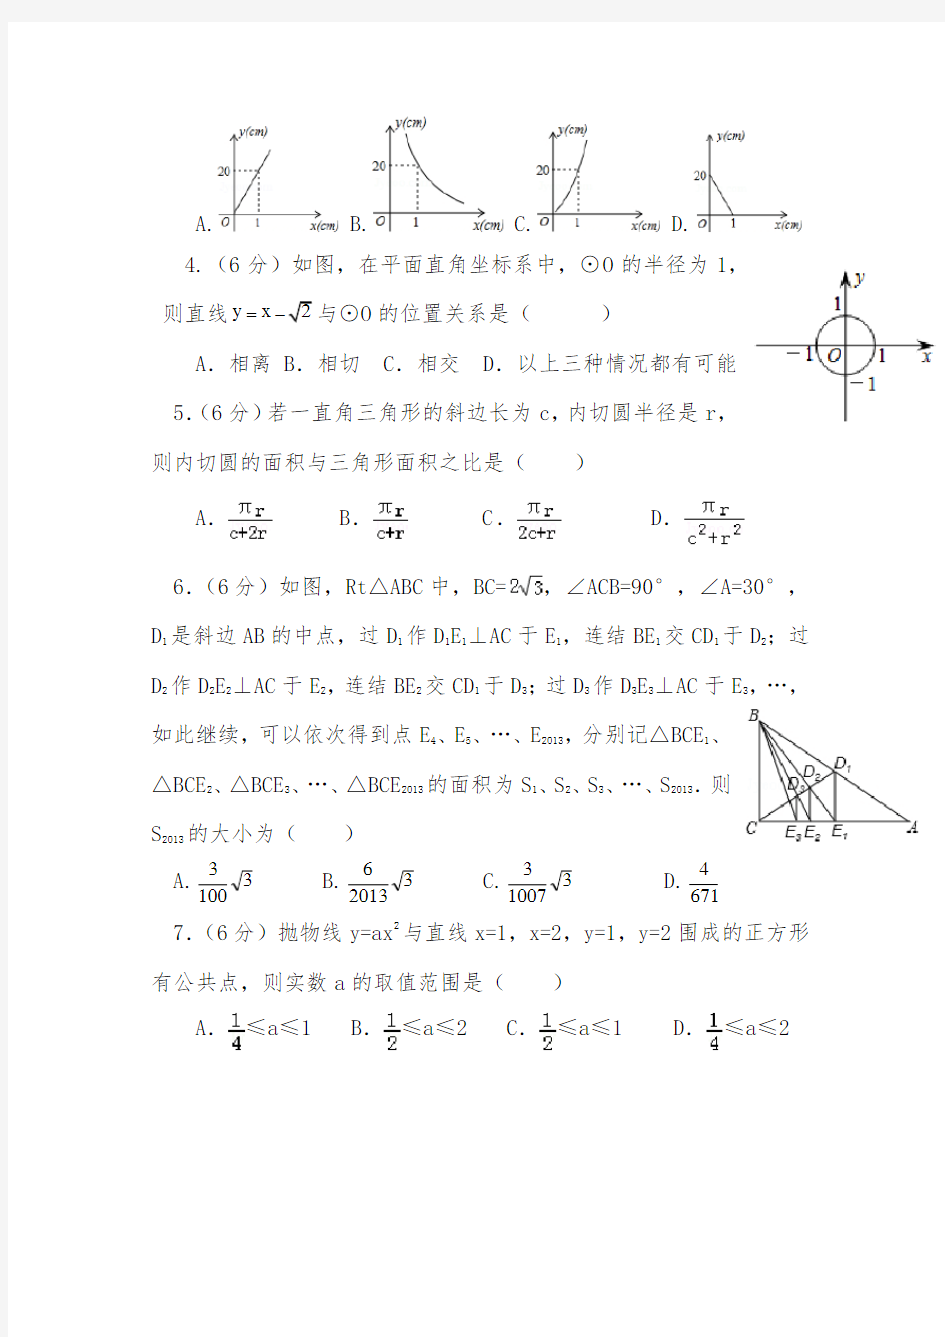 【2020-2021自招】浙江温州中学初升高自主招生数学模拟试卷【4套】【含解析】